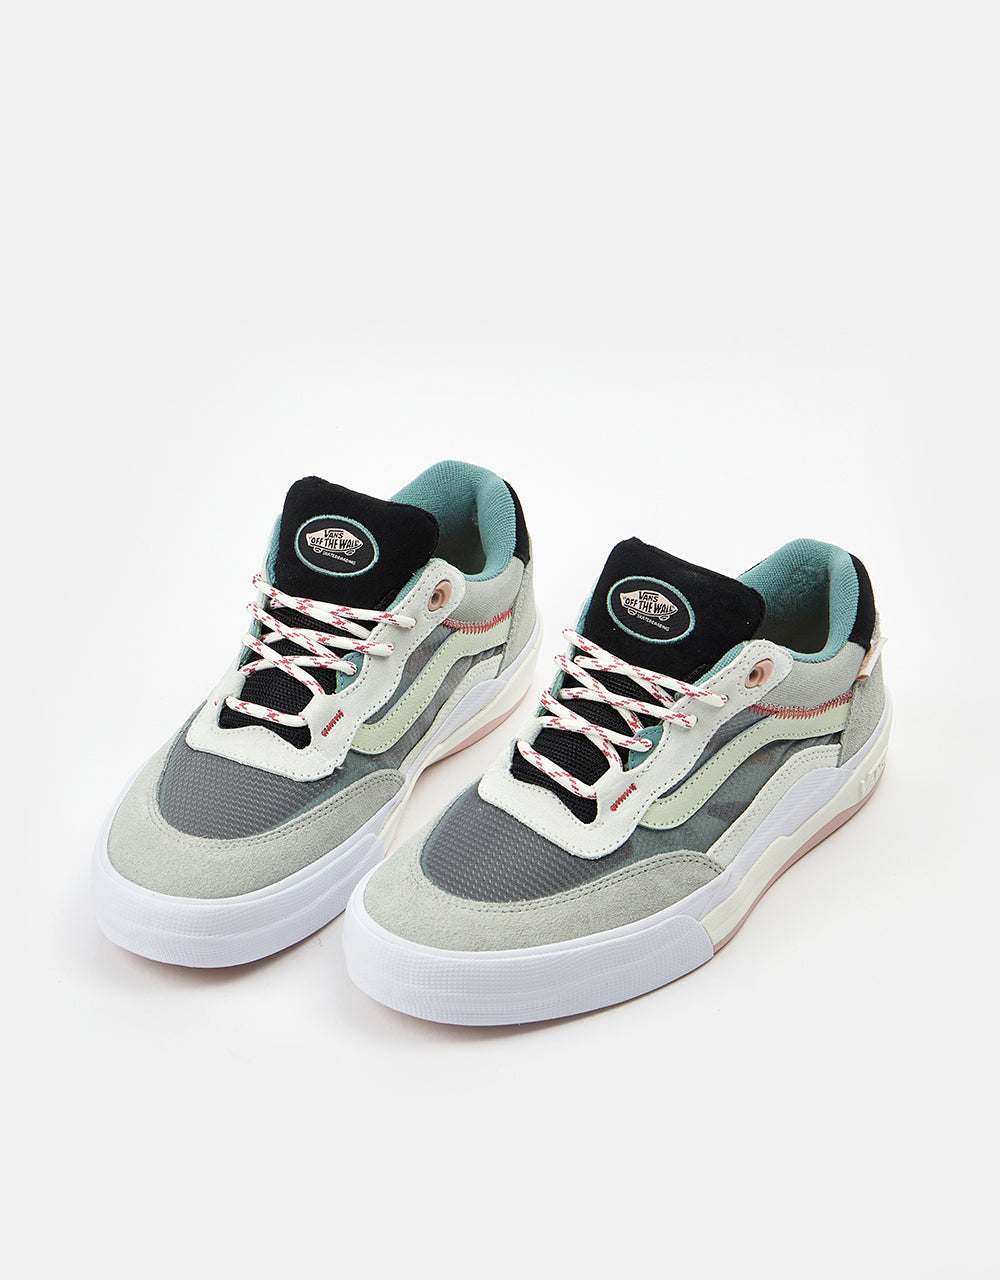 Vans Wayvee Skate Shoes - Grey/Multi